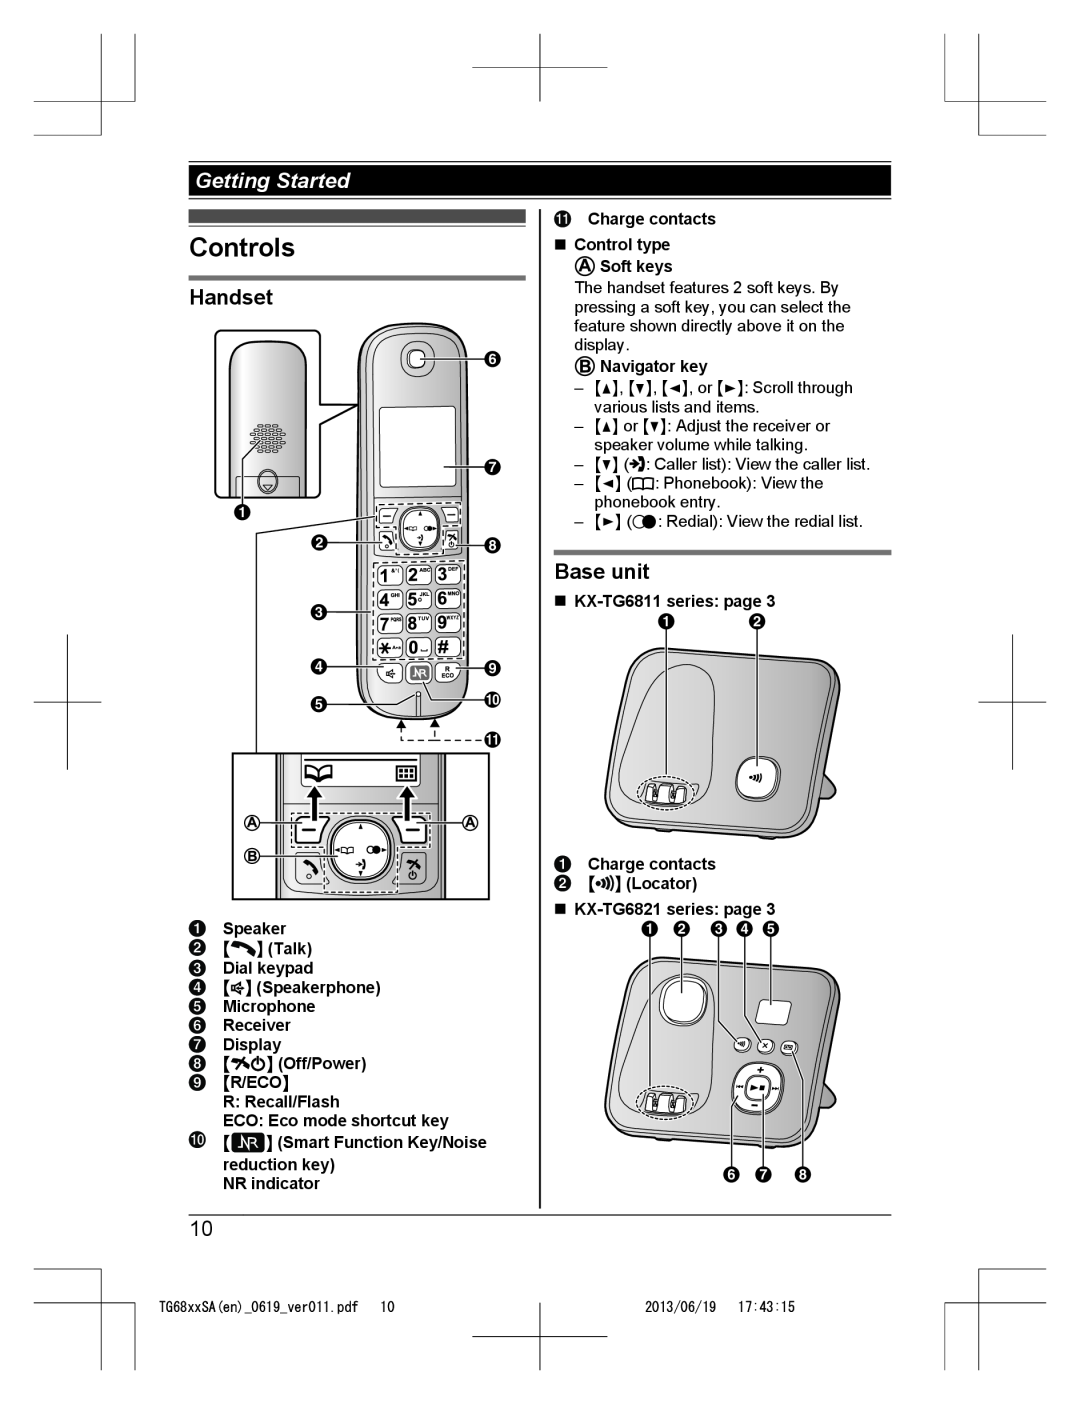 Panasonic KX-TG6811SA Controls, Handset, Base unit, Di E J, Speaker MN Talk Dial keypad, reduction key NR indicator 